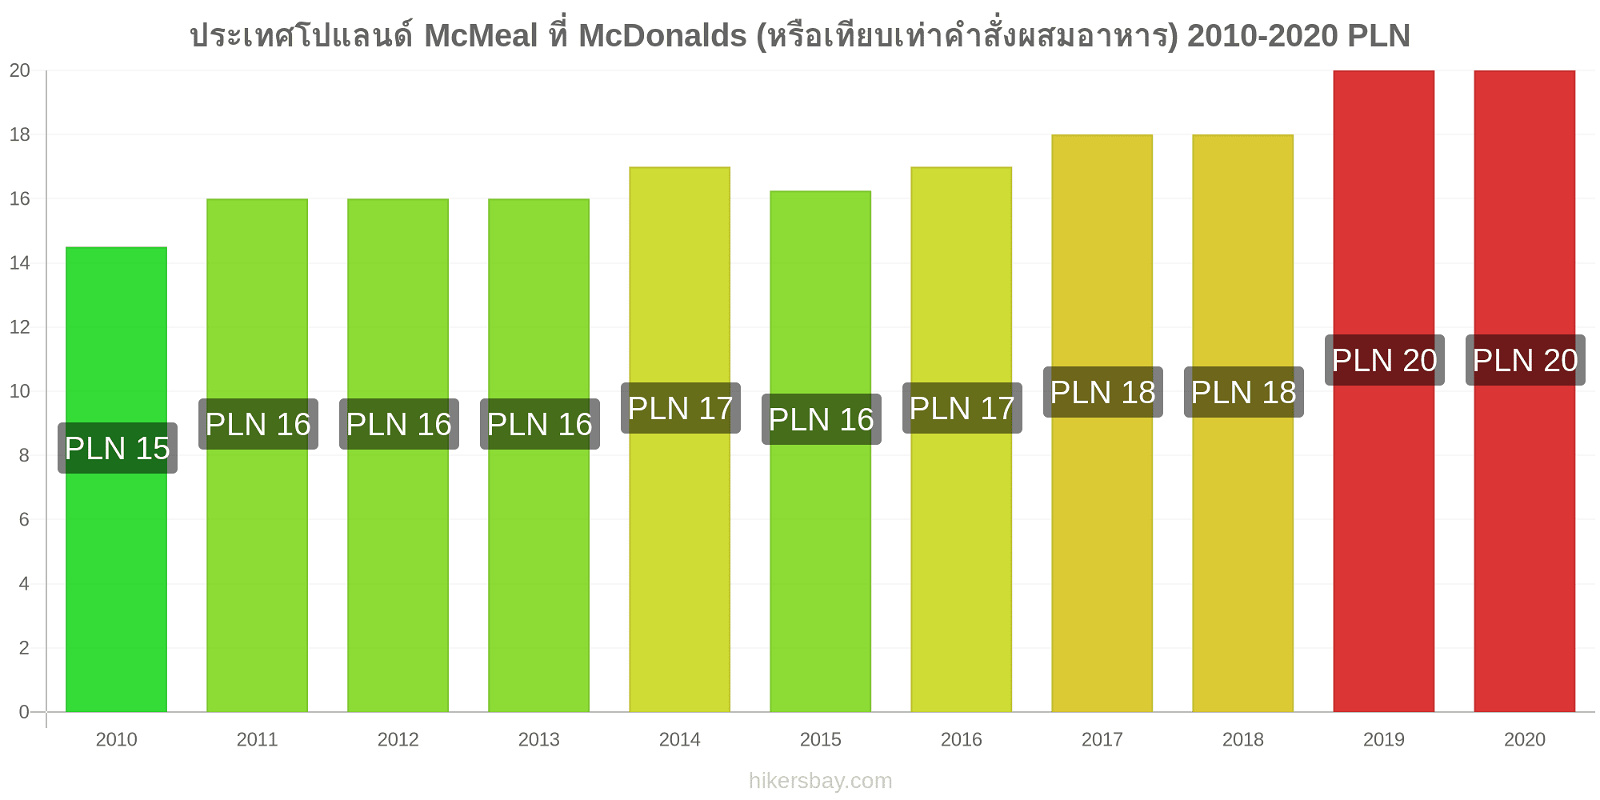 ประเทศโปแลนด์ การเปลี่ยนแปลงราคา McMeal ที่ McDonalds (หรือเทียบเท่าคำสั่งผสมอาหาร) hikersbay.com